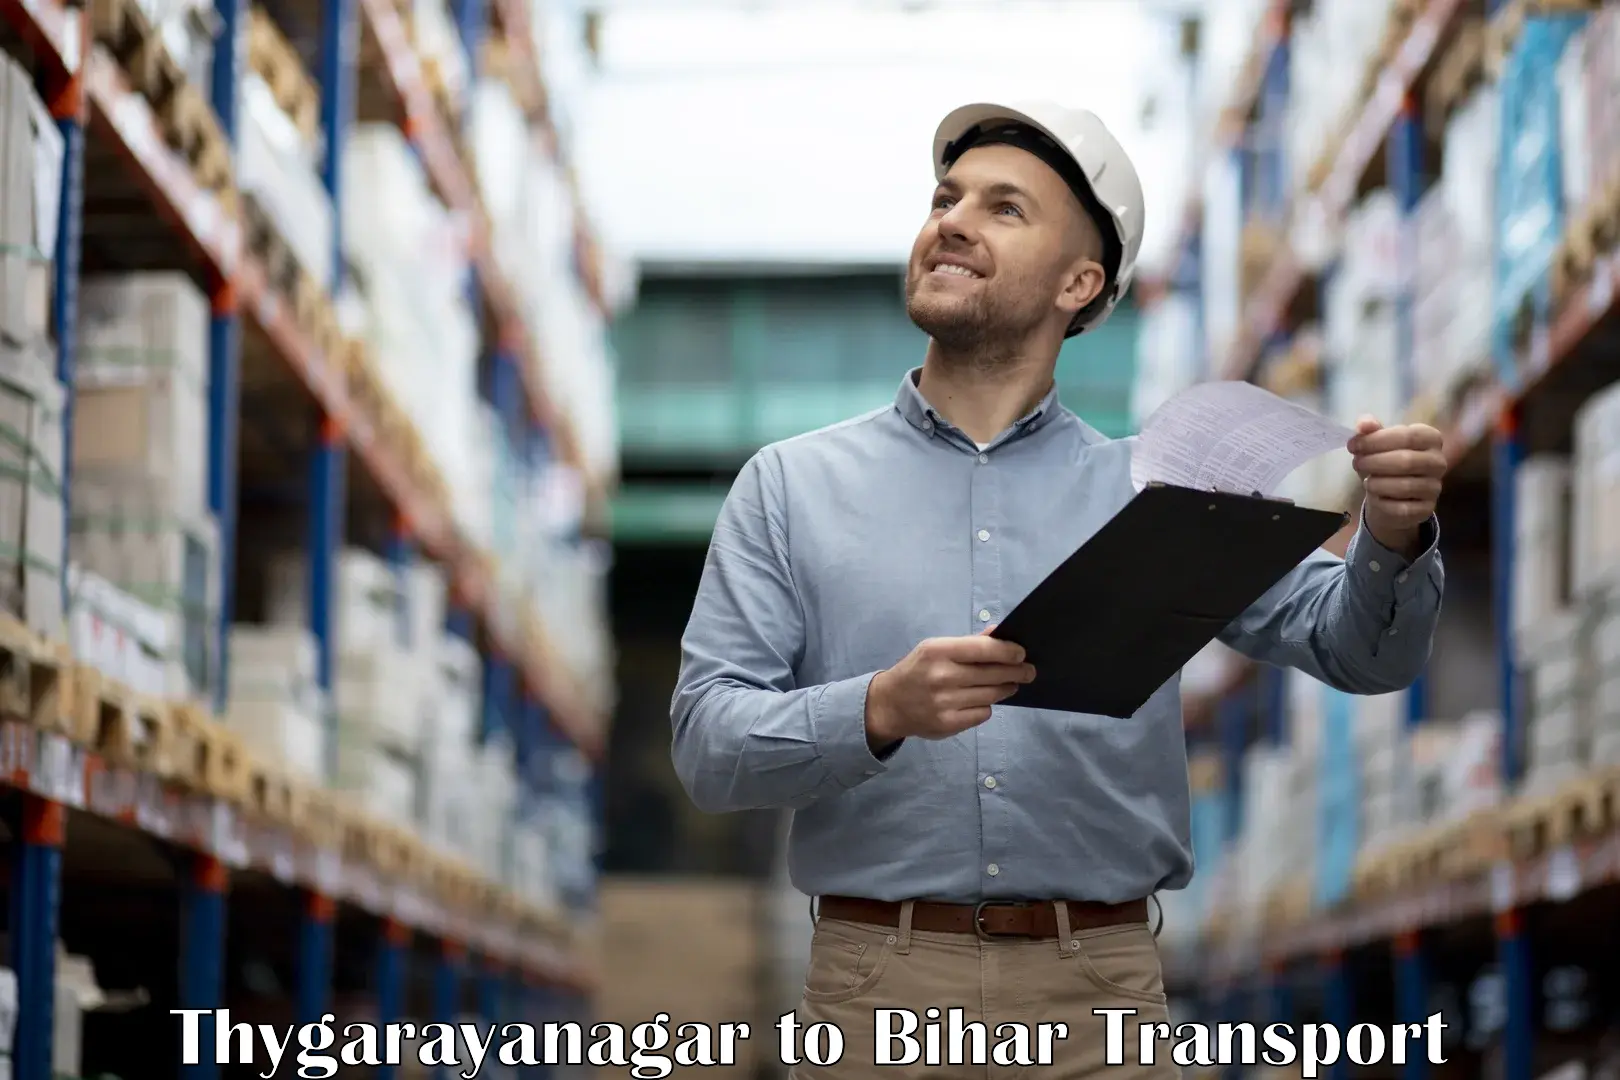 Daily transport service Thygarayanagar to Bhabua